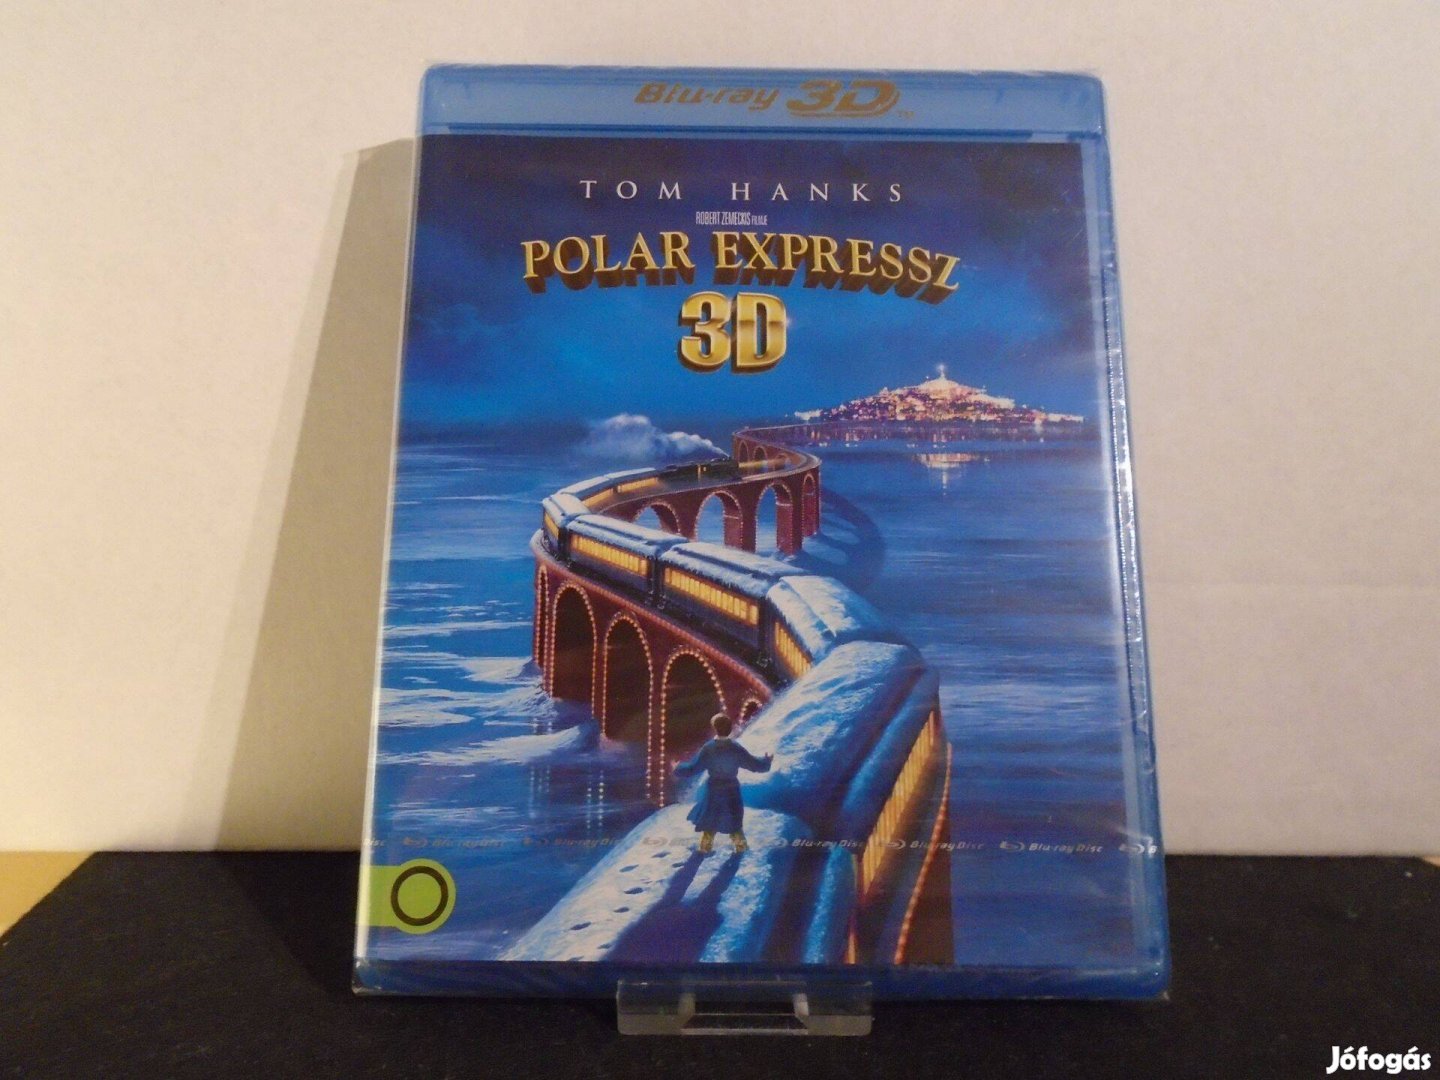 Polar expressz 3D/2D 2004 Blu-ray / bluray